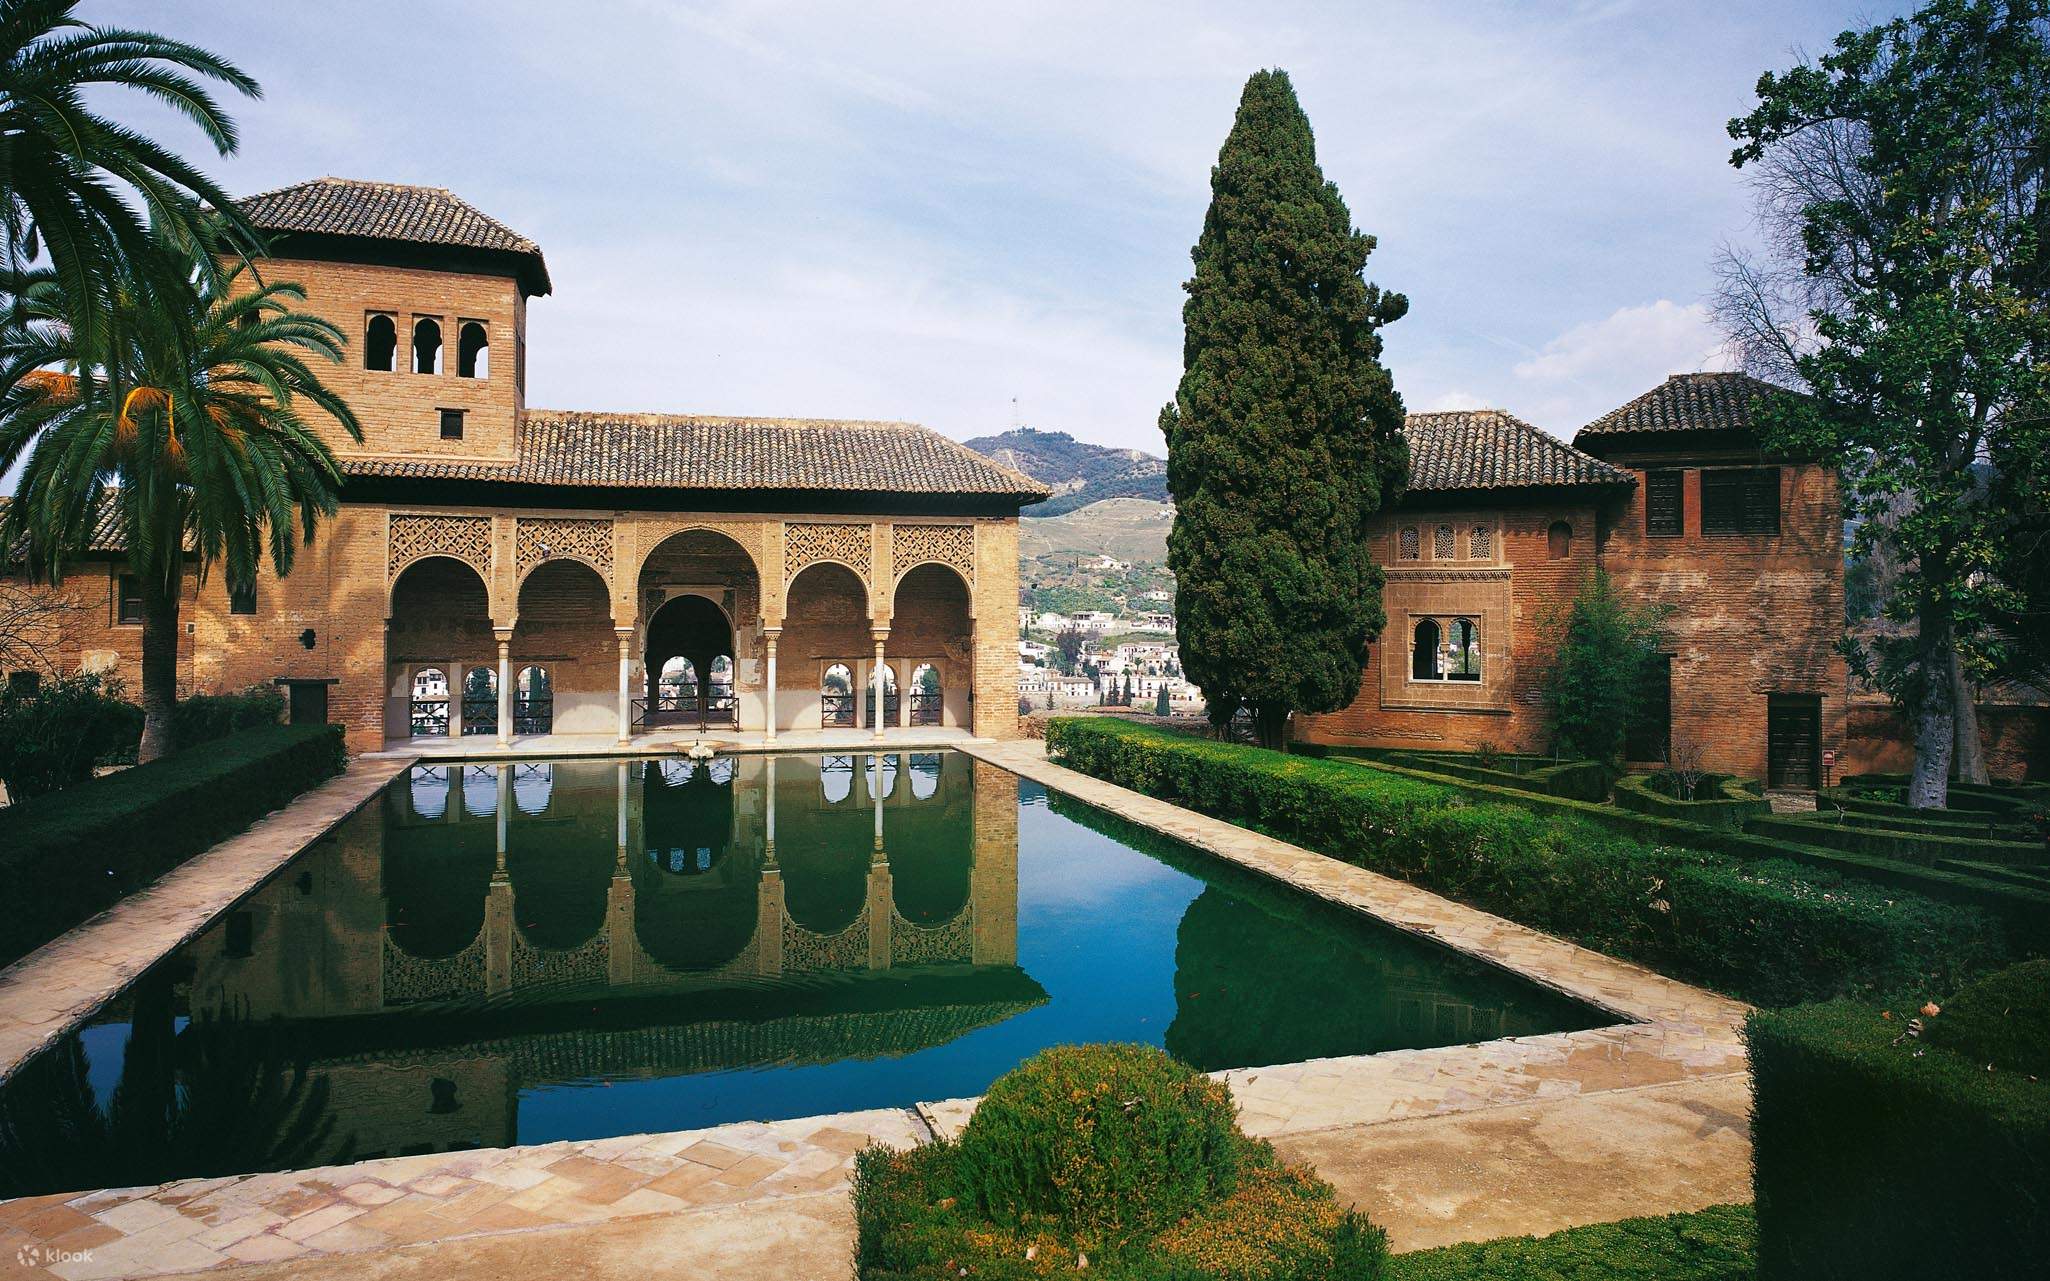 Granada Tour mit Alhambra Palast und Generalife Gärten - Klook, Vereinigte  Staaten